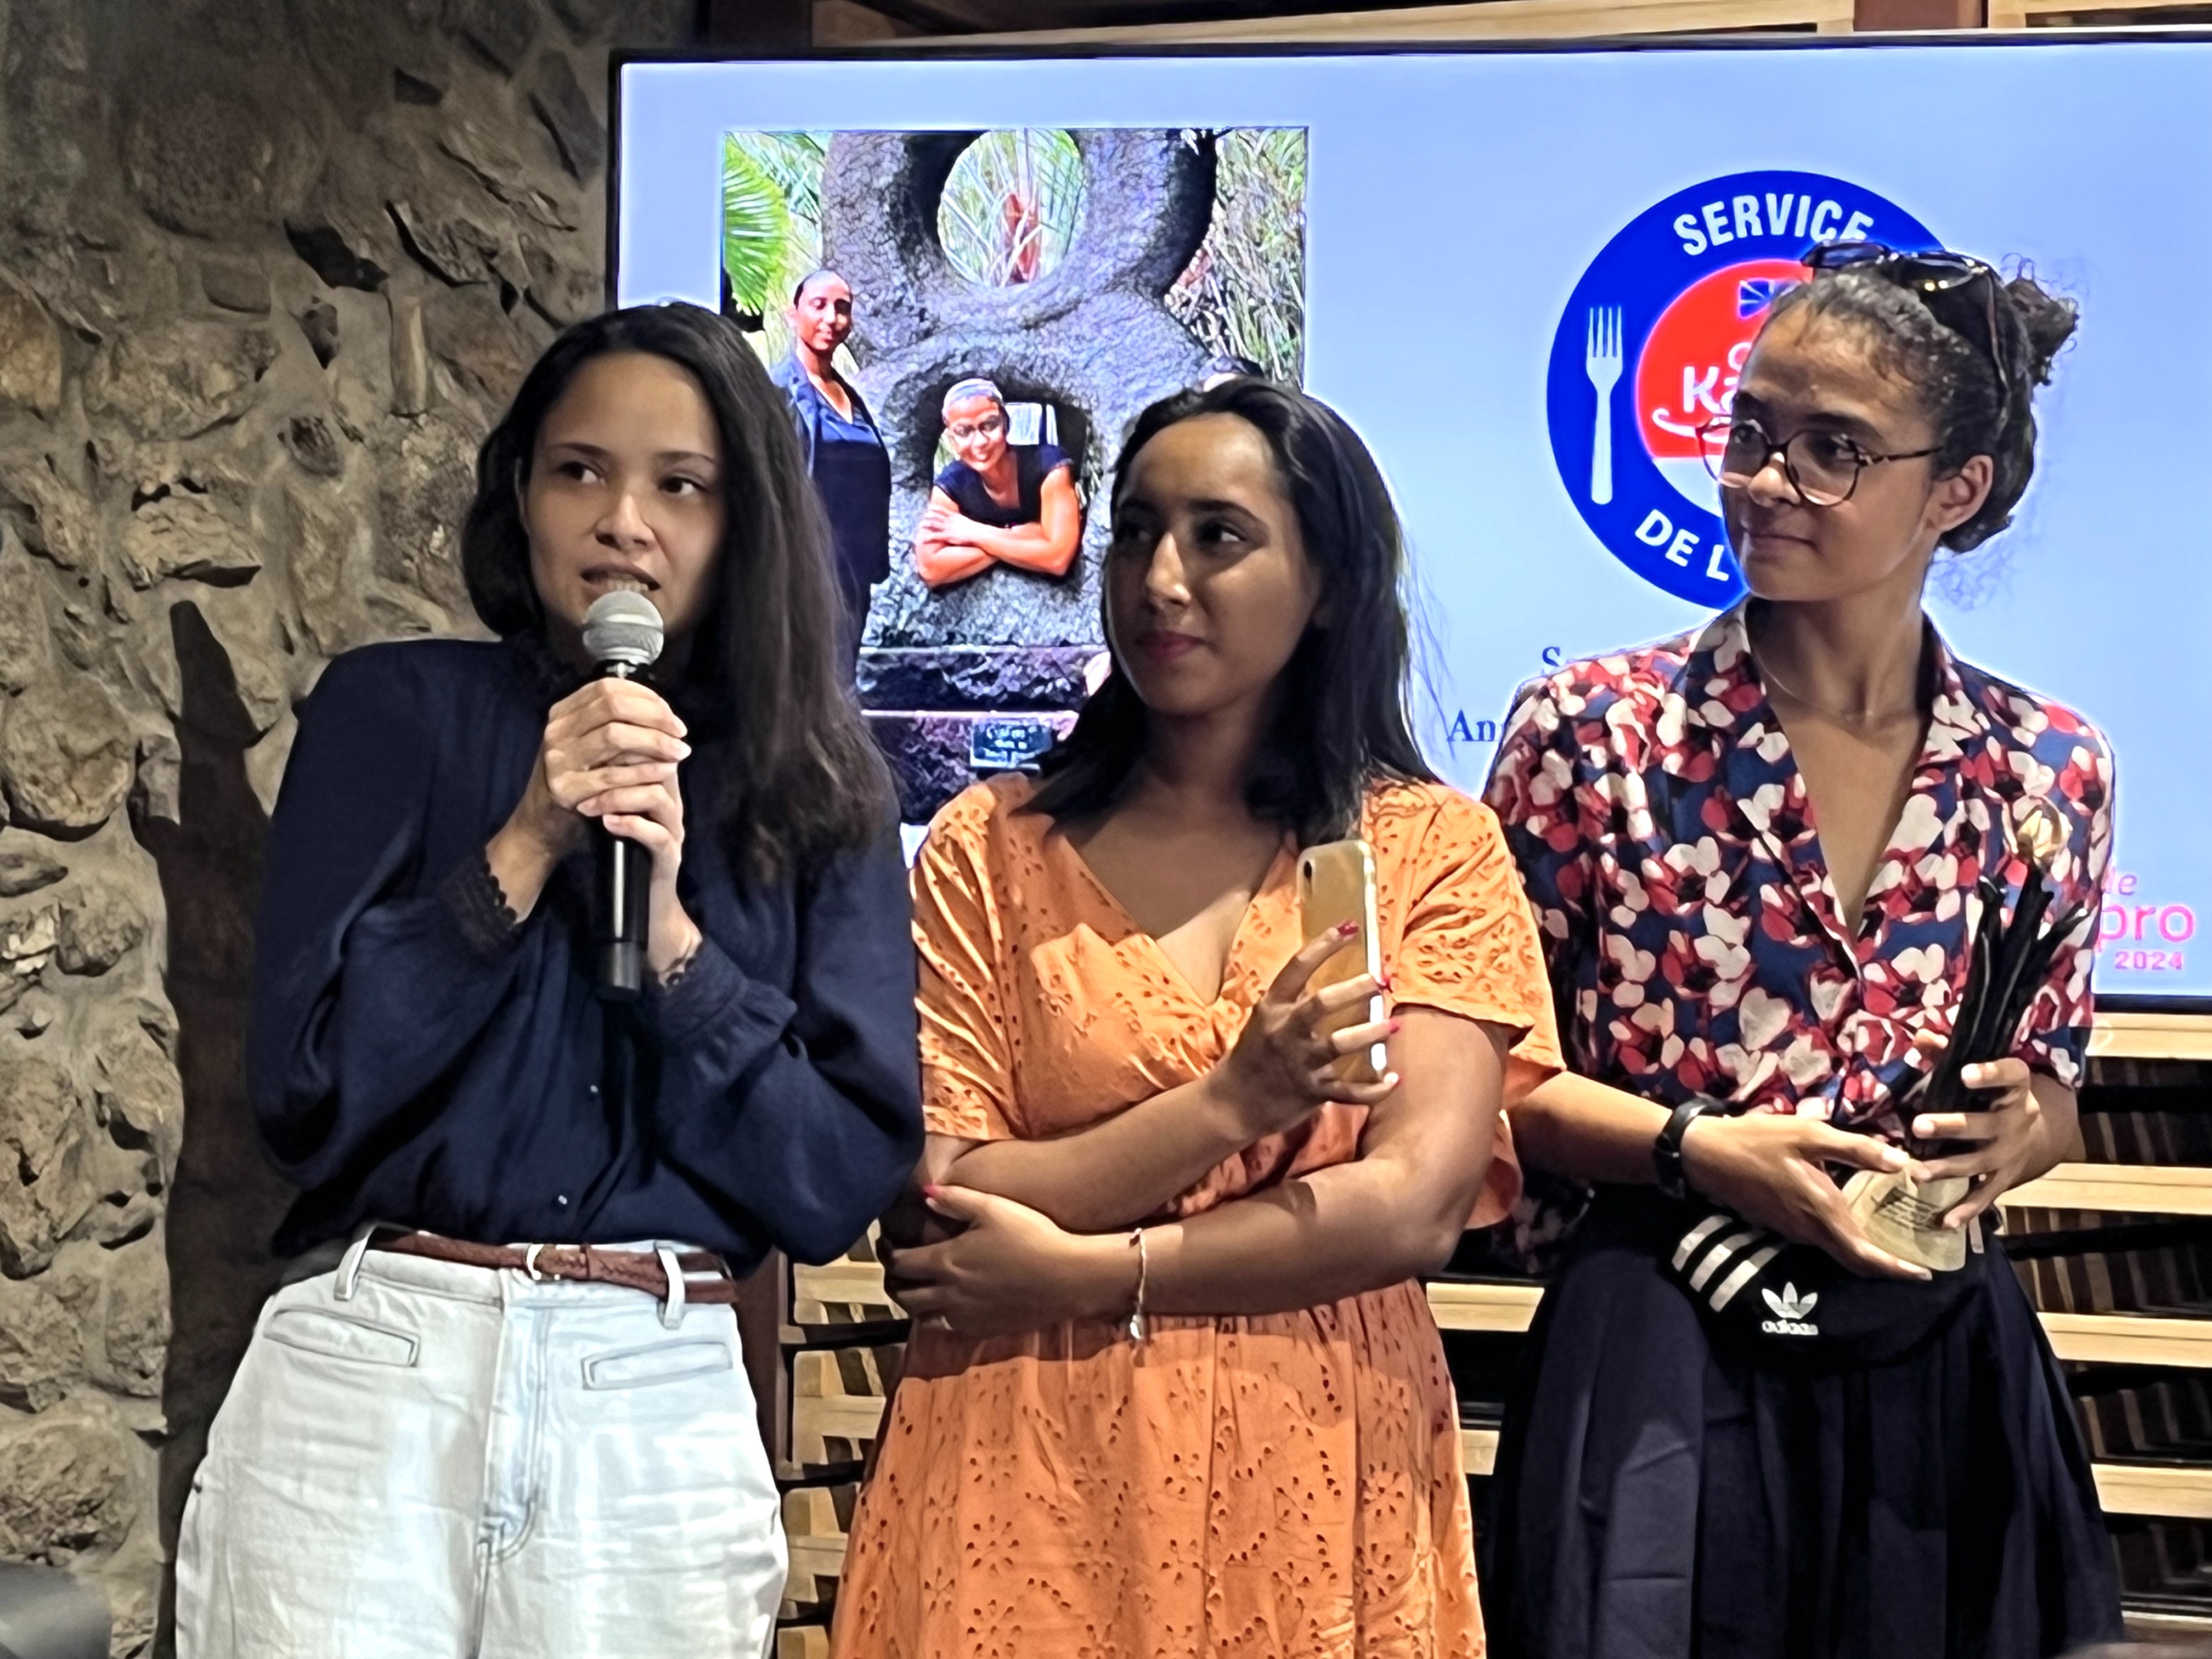 Le trophée Service de l'année a été remis à 3 jeunes femmes qui officient à La Case Pitey: Sarah Mourgapamodely, Anaïs Payet et Clailie Cuziol-Payet